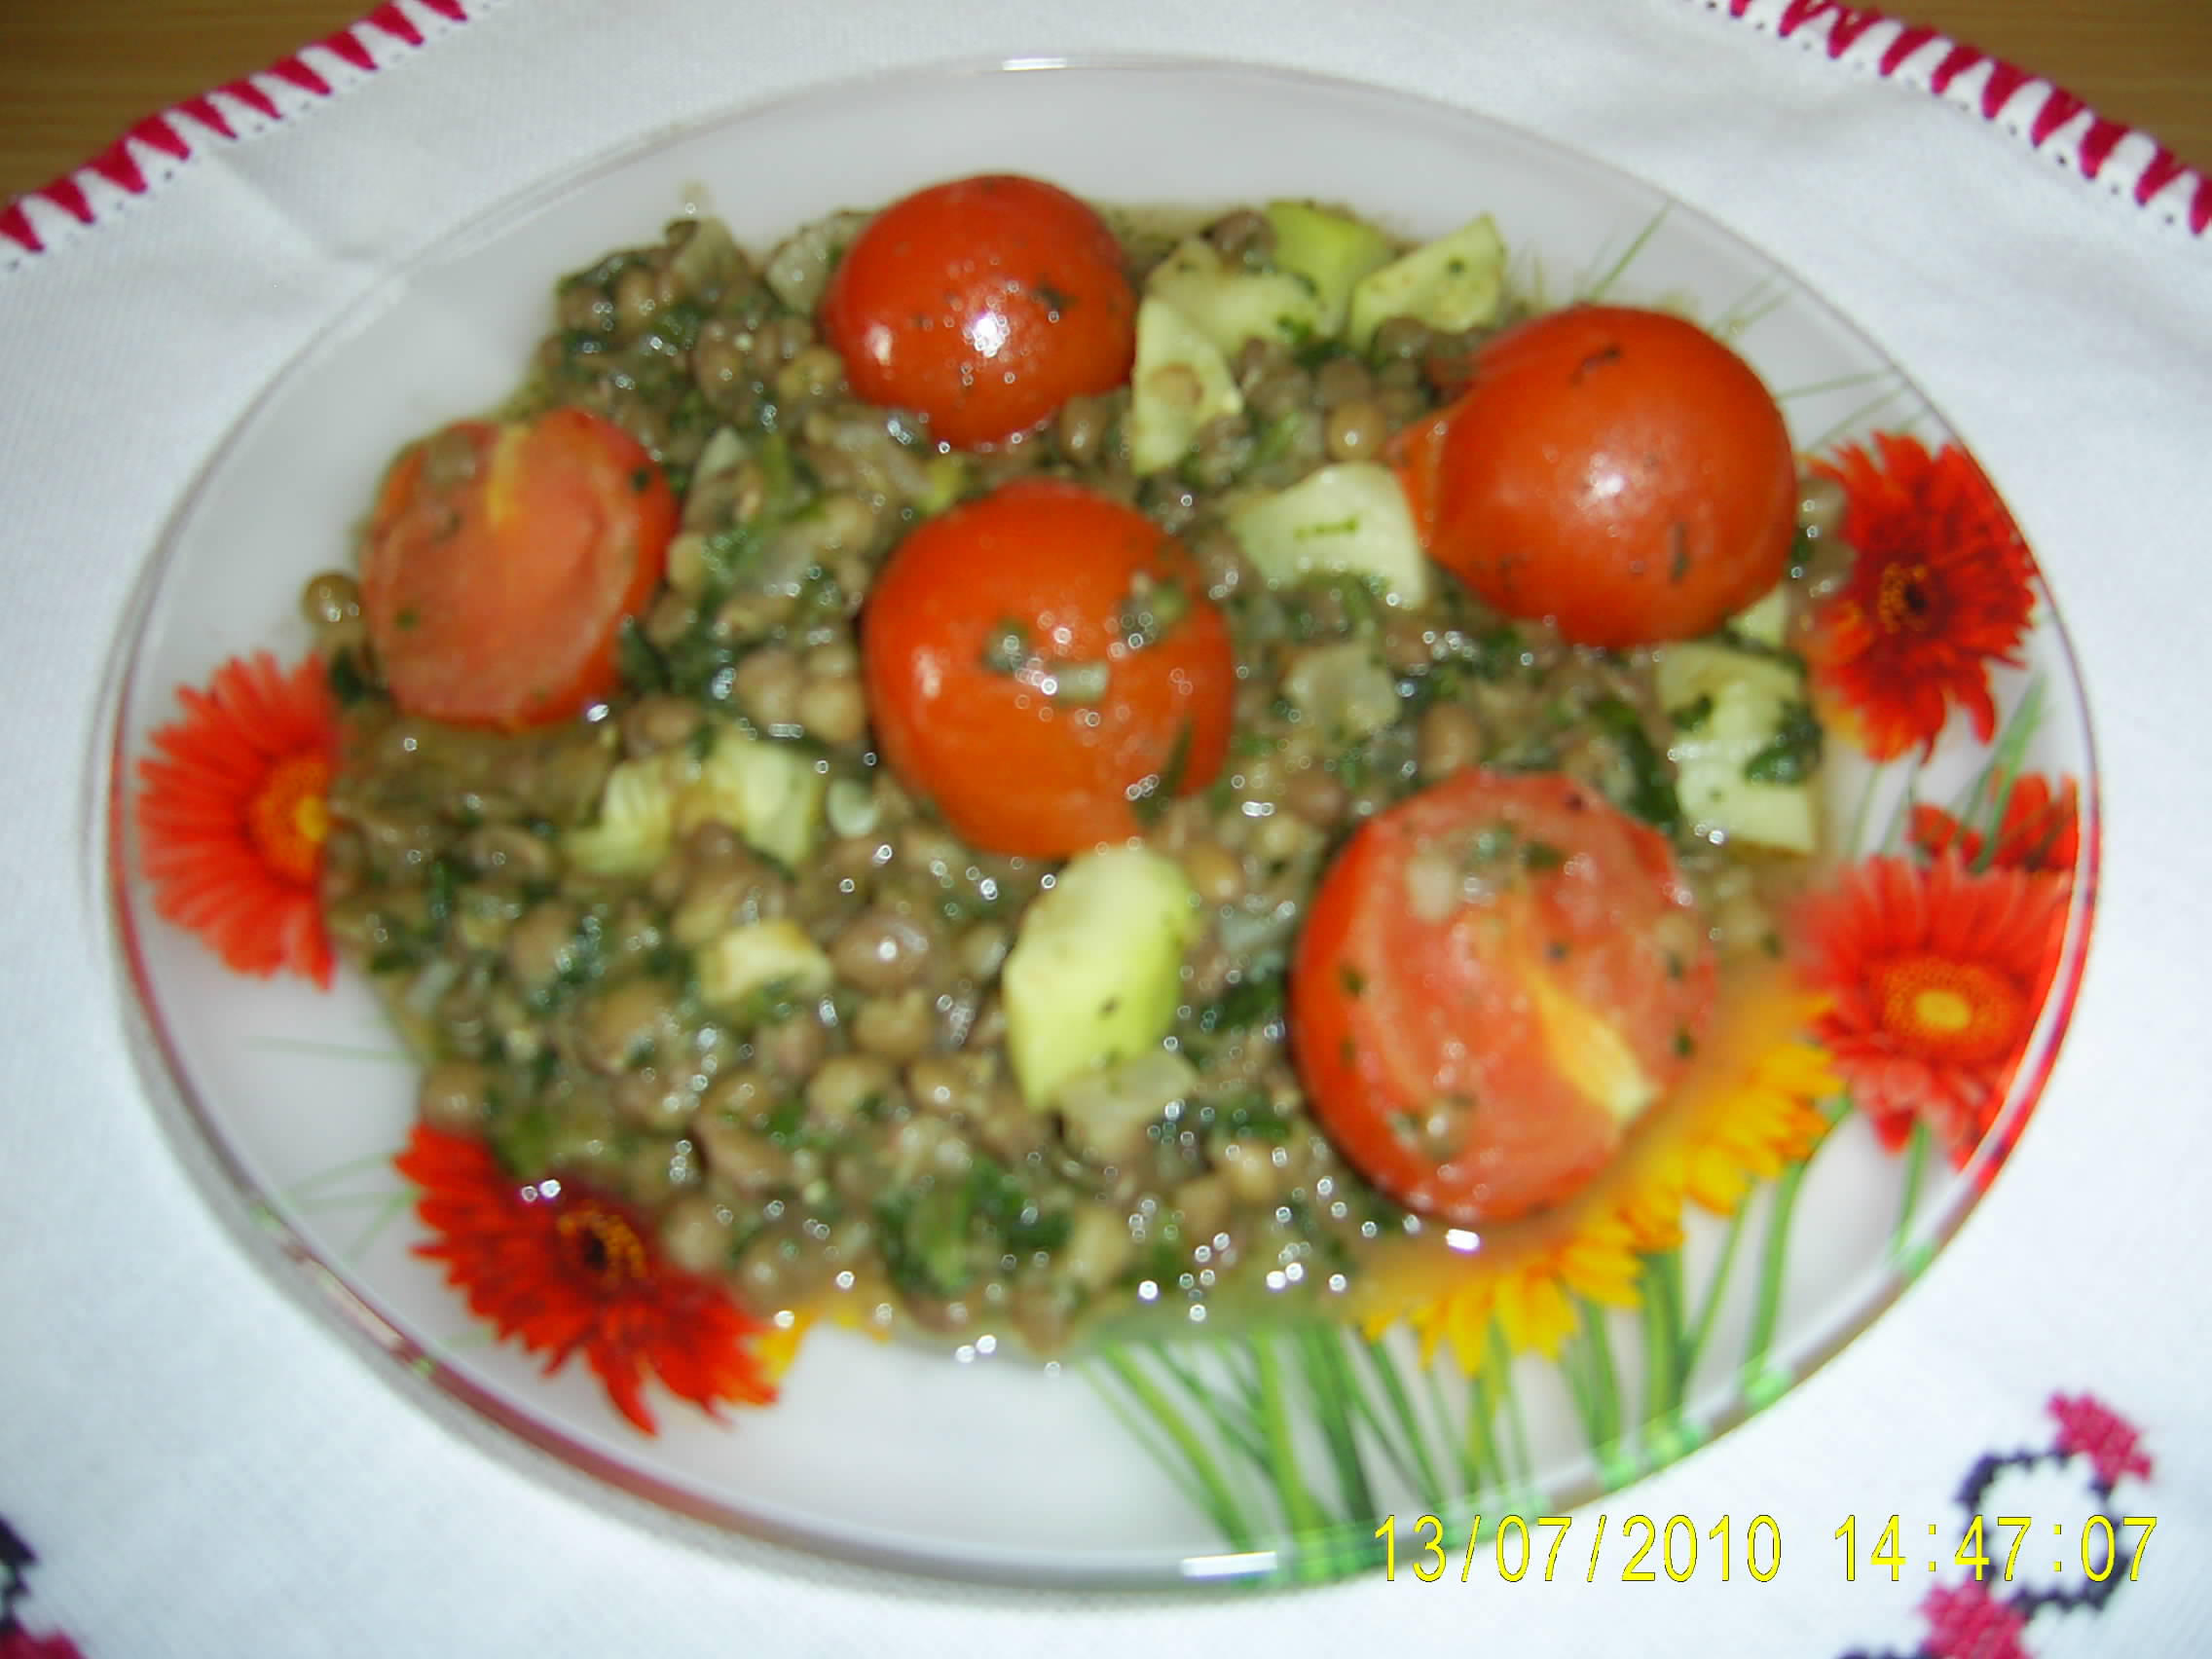 Salata de linte cu dovleac